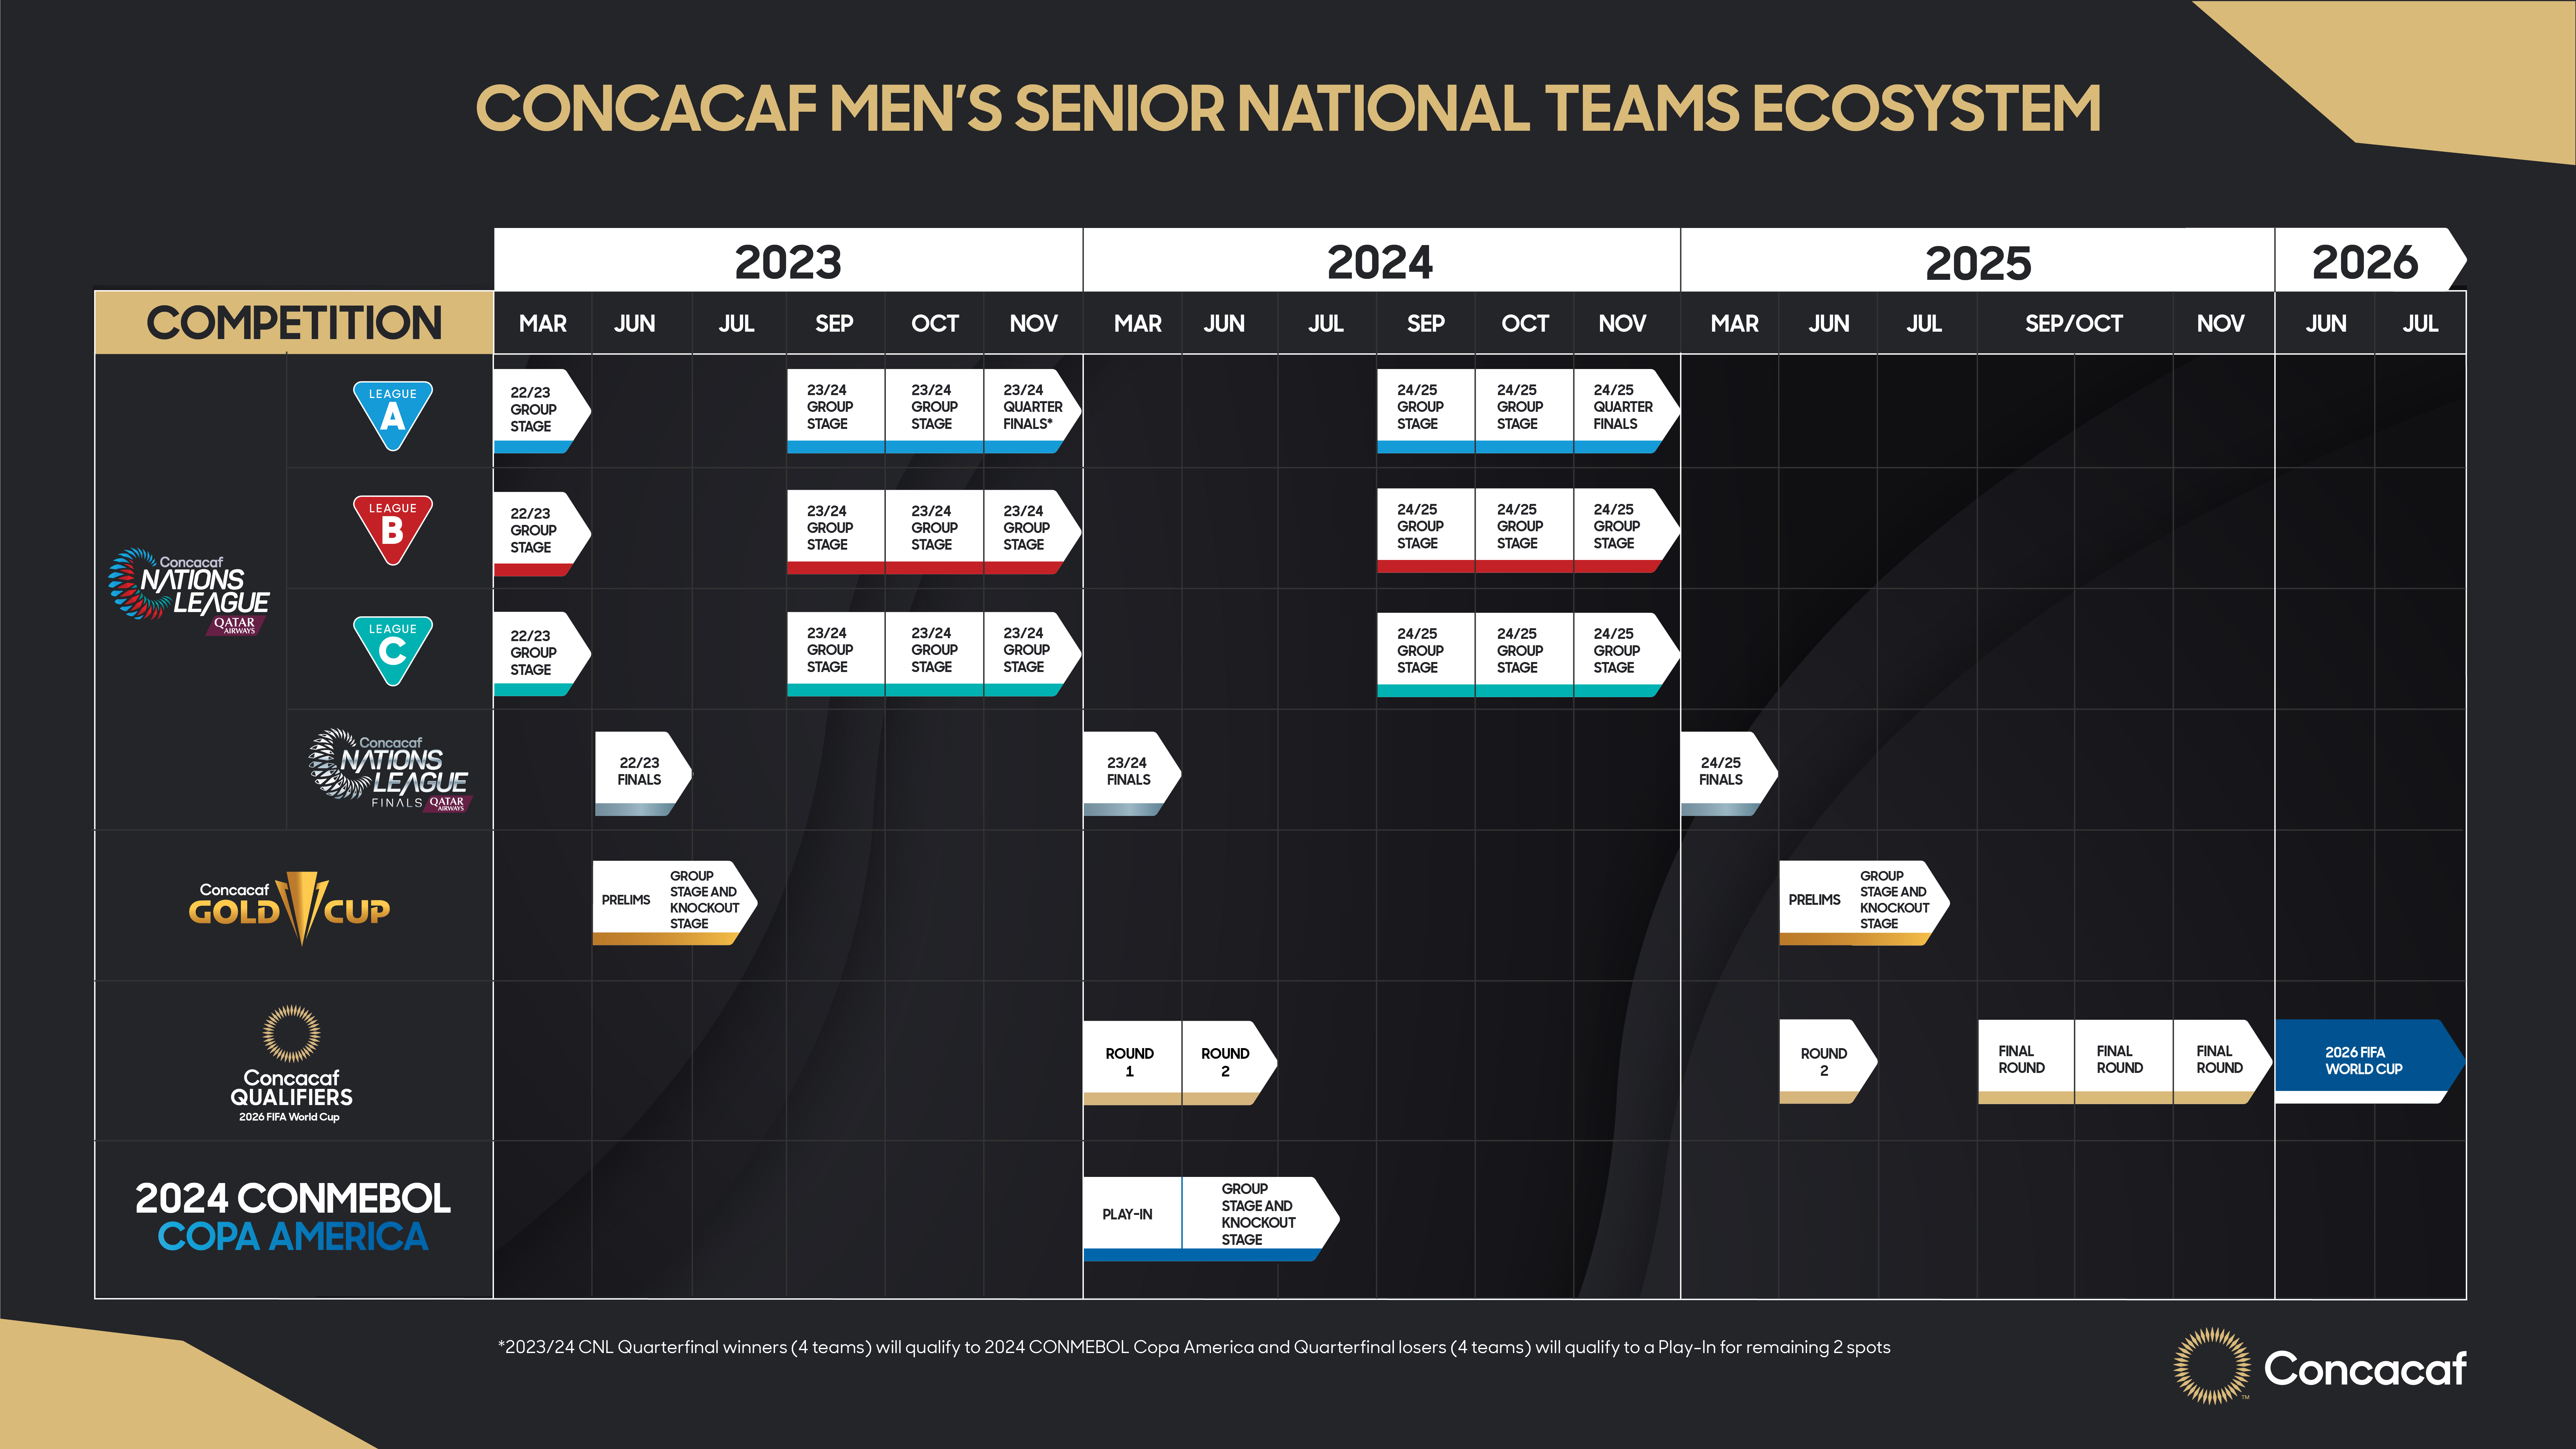 Concacaf Men's Senior National Teams Ecosystem